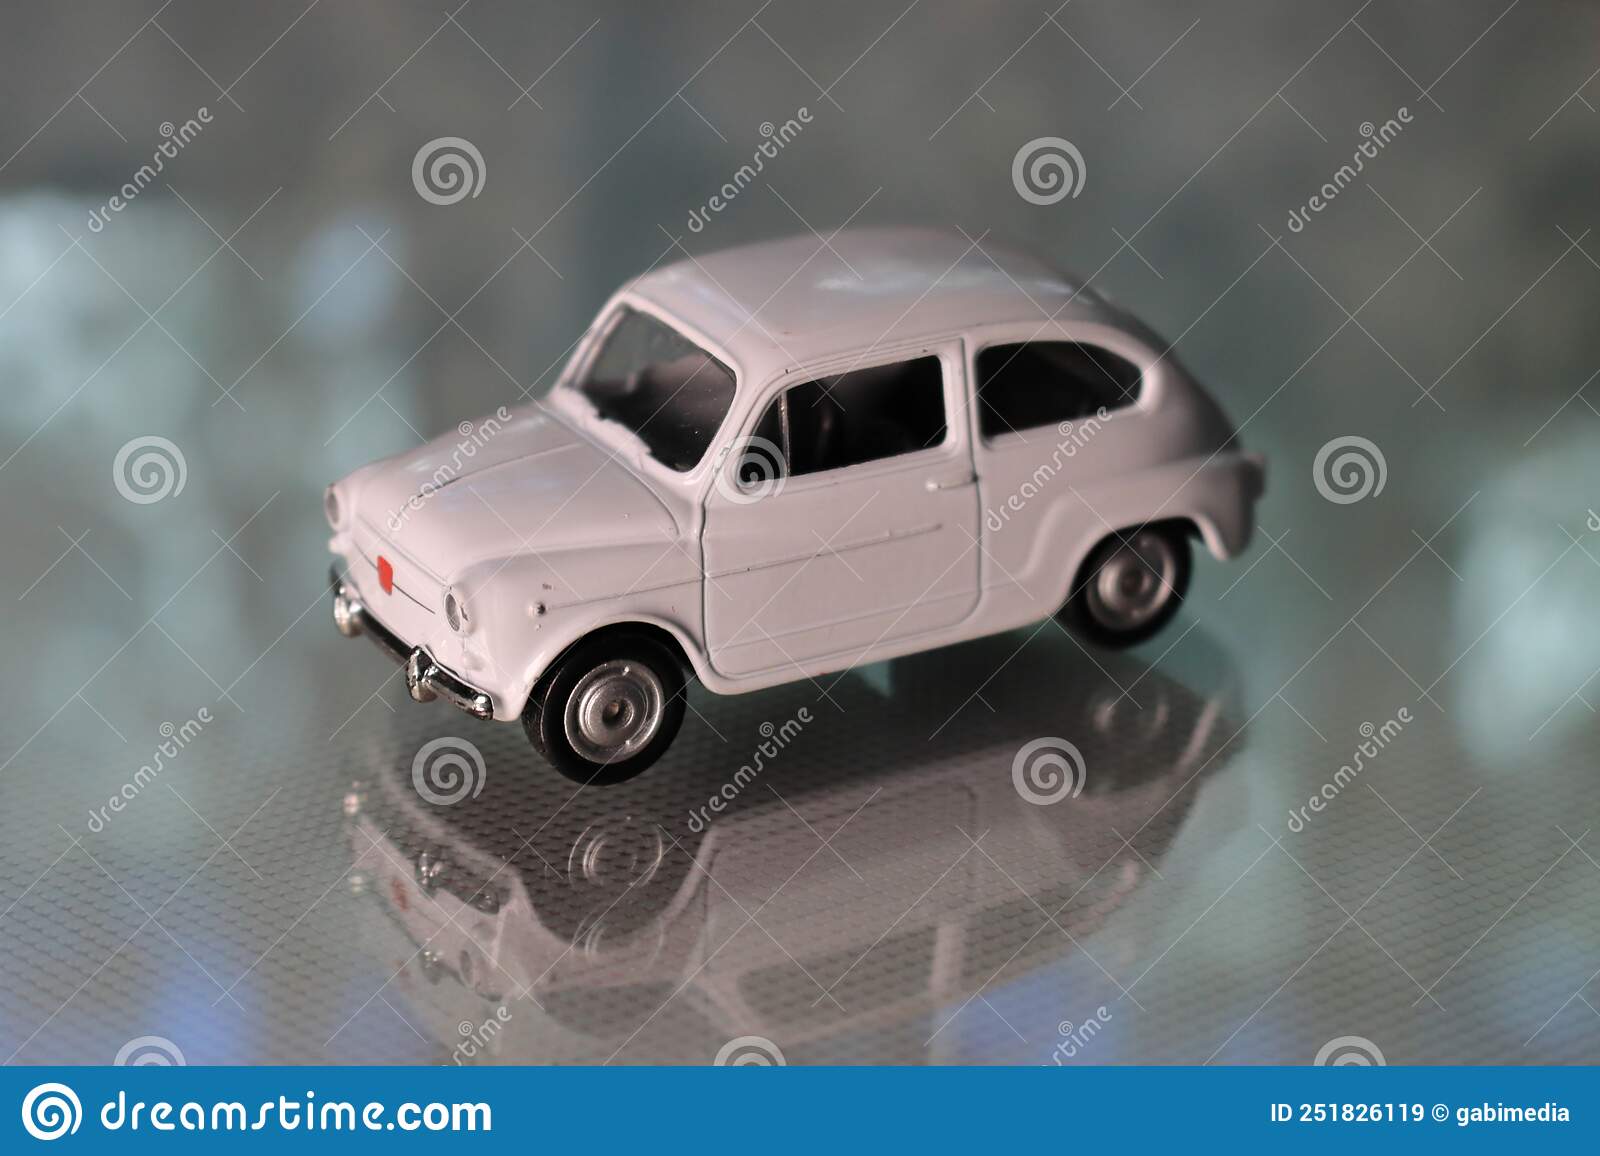 Fiat 500 White Diecast Model, Blurred Background